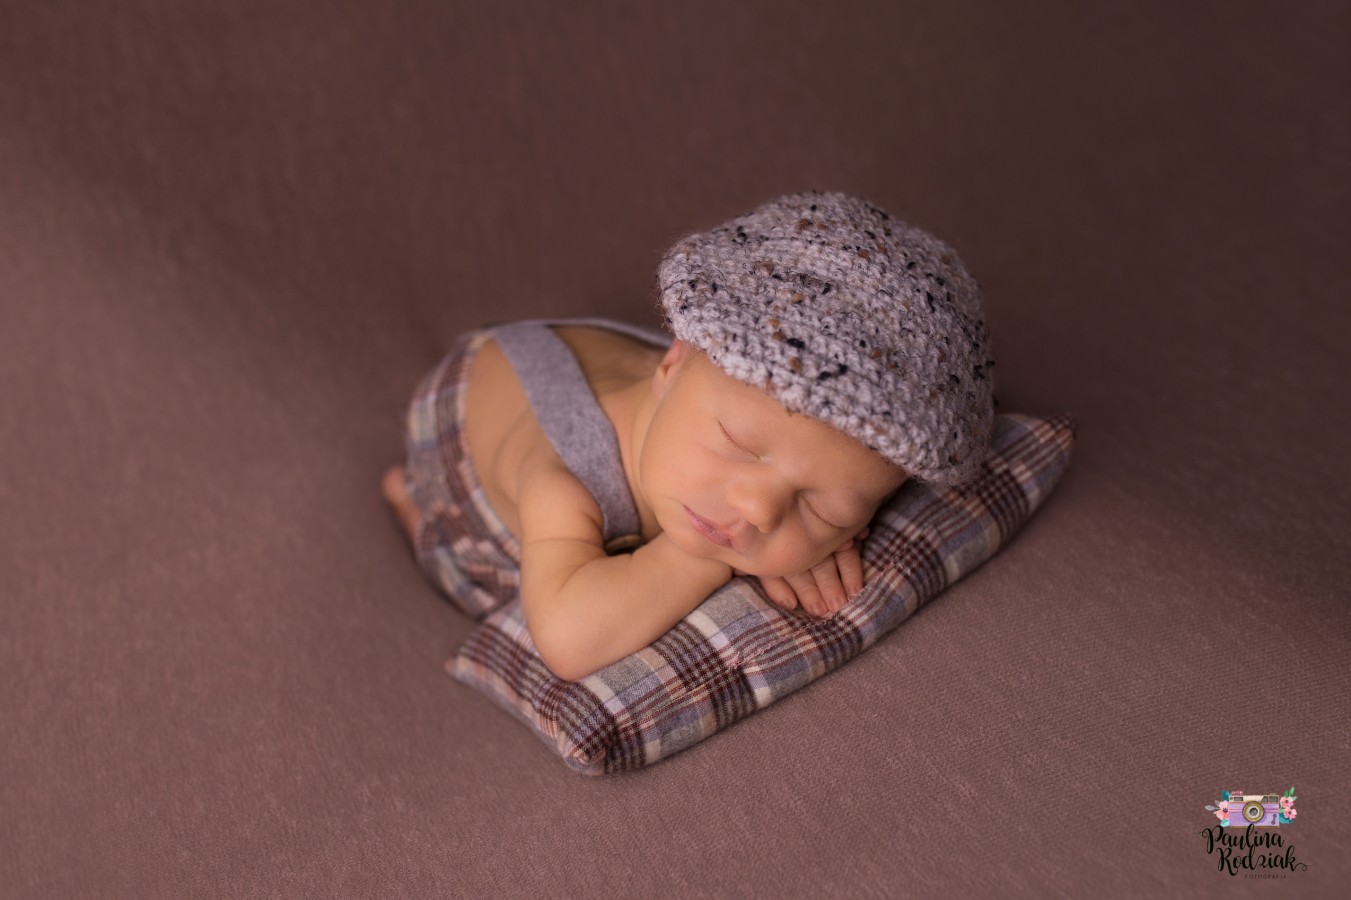 fotograf bydgoszcz paulina-rodziak-fotografia portfolio zdjecia noworodkow sesje noworodkowe niemowlę